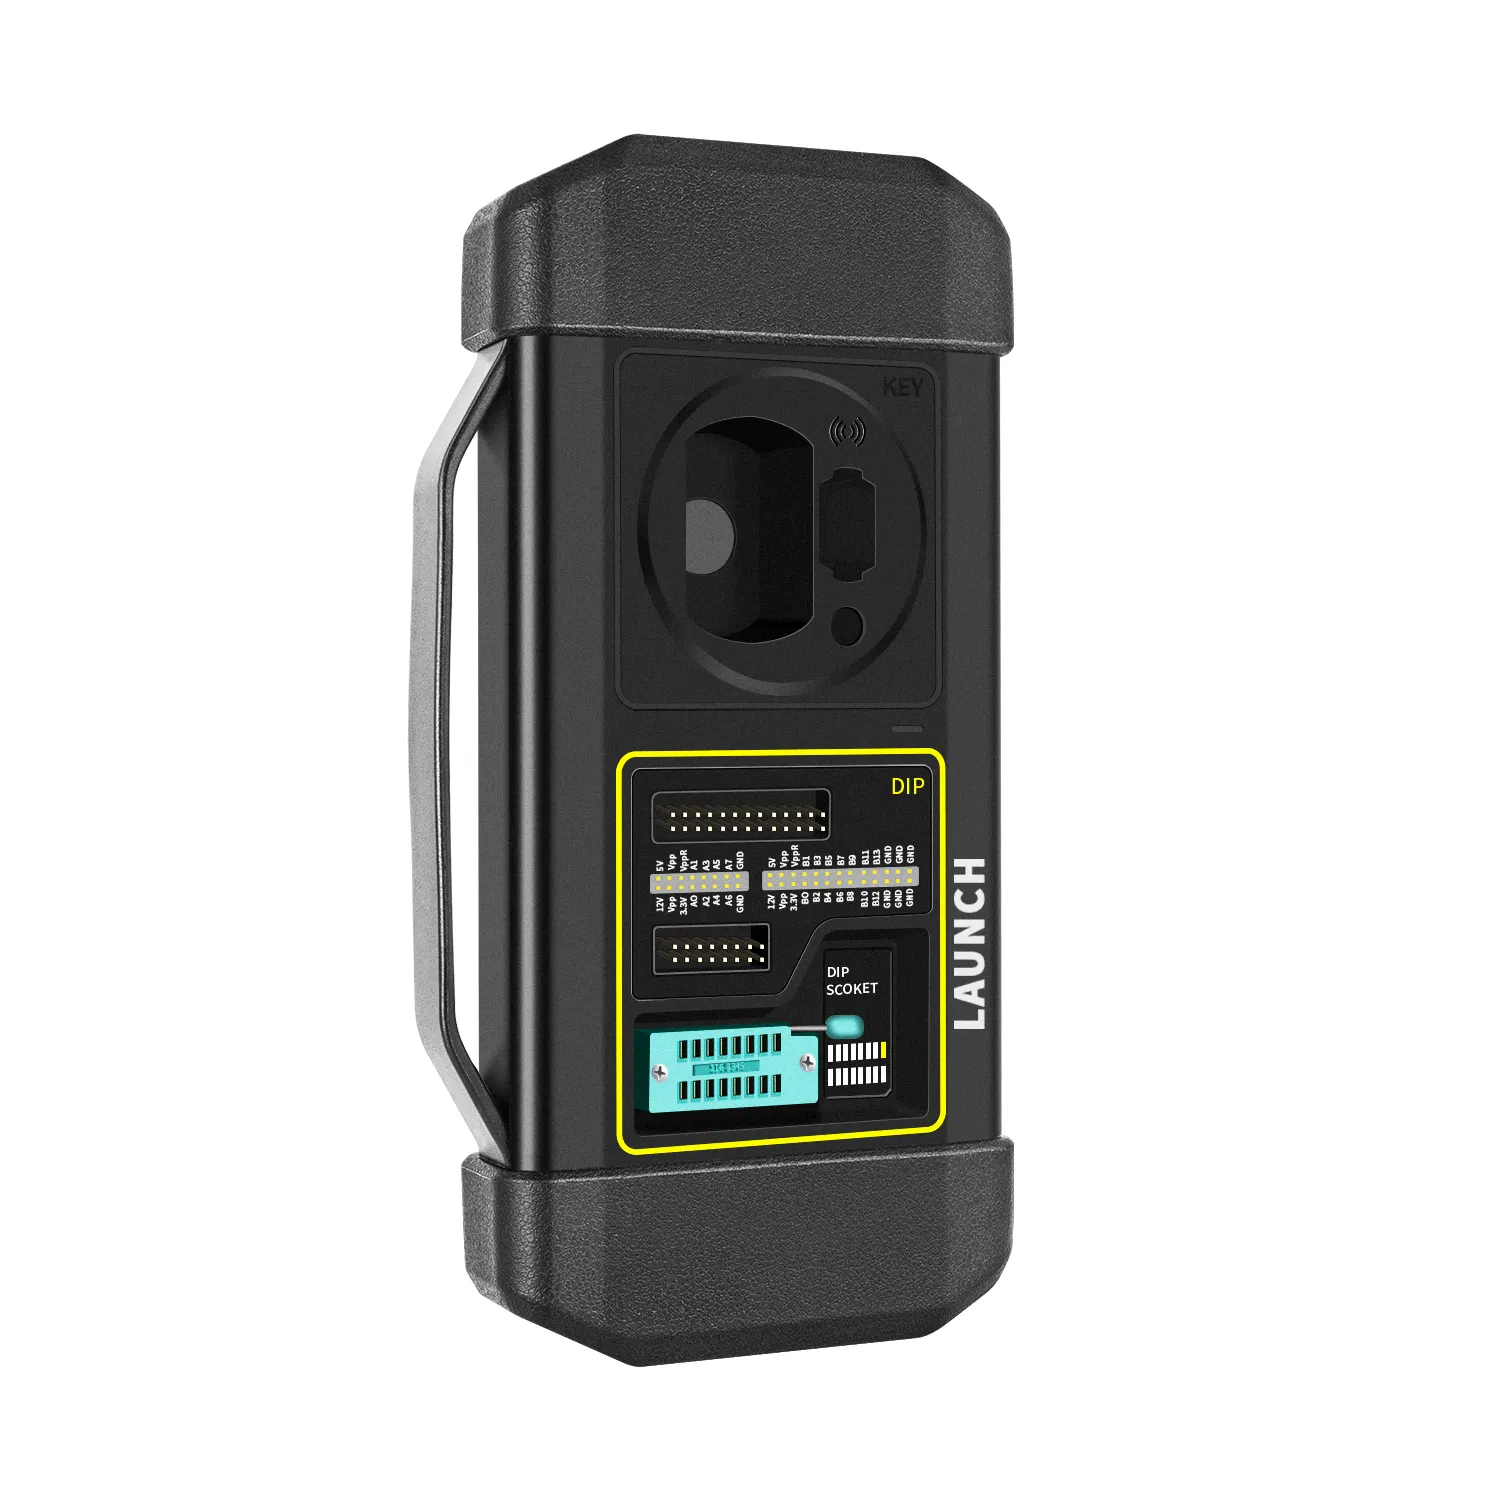 Запуск X431 XPROG 3 + Авто ключевой программирующий OBD 2 сканер Авто диагностический инструмент для автомобиля obd Wi-Fi, BT